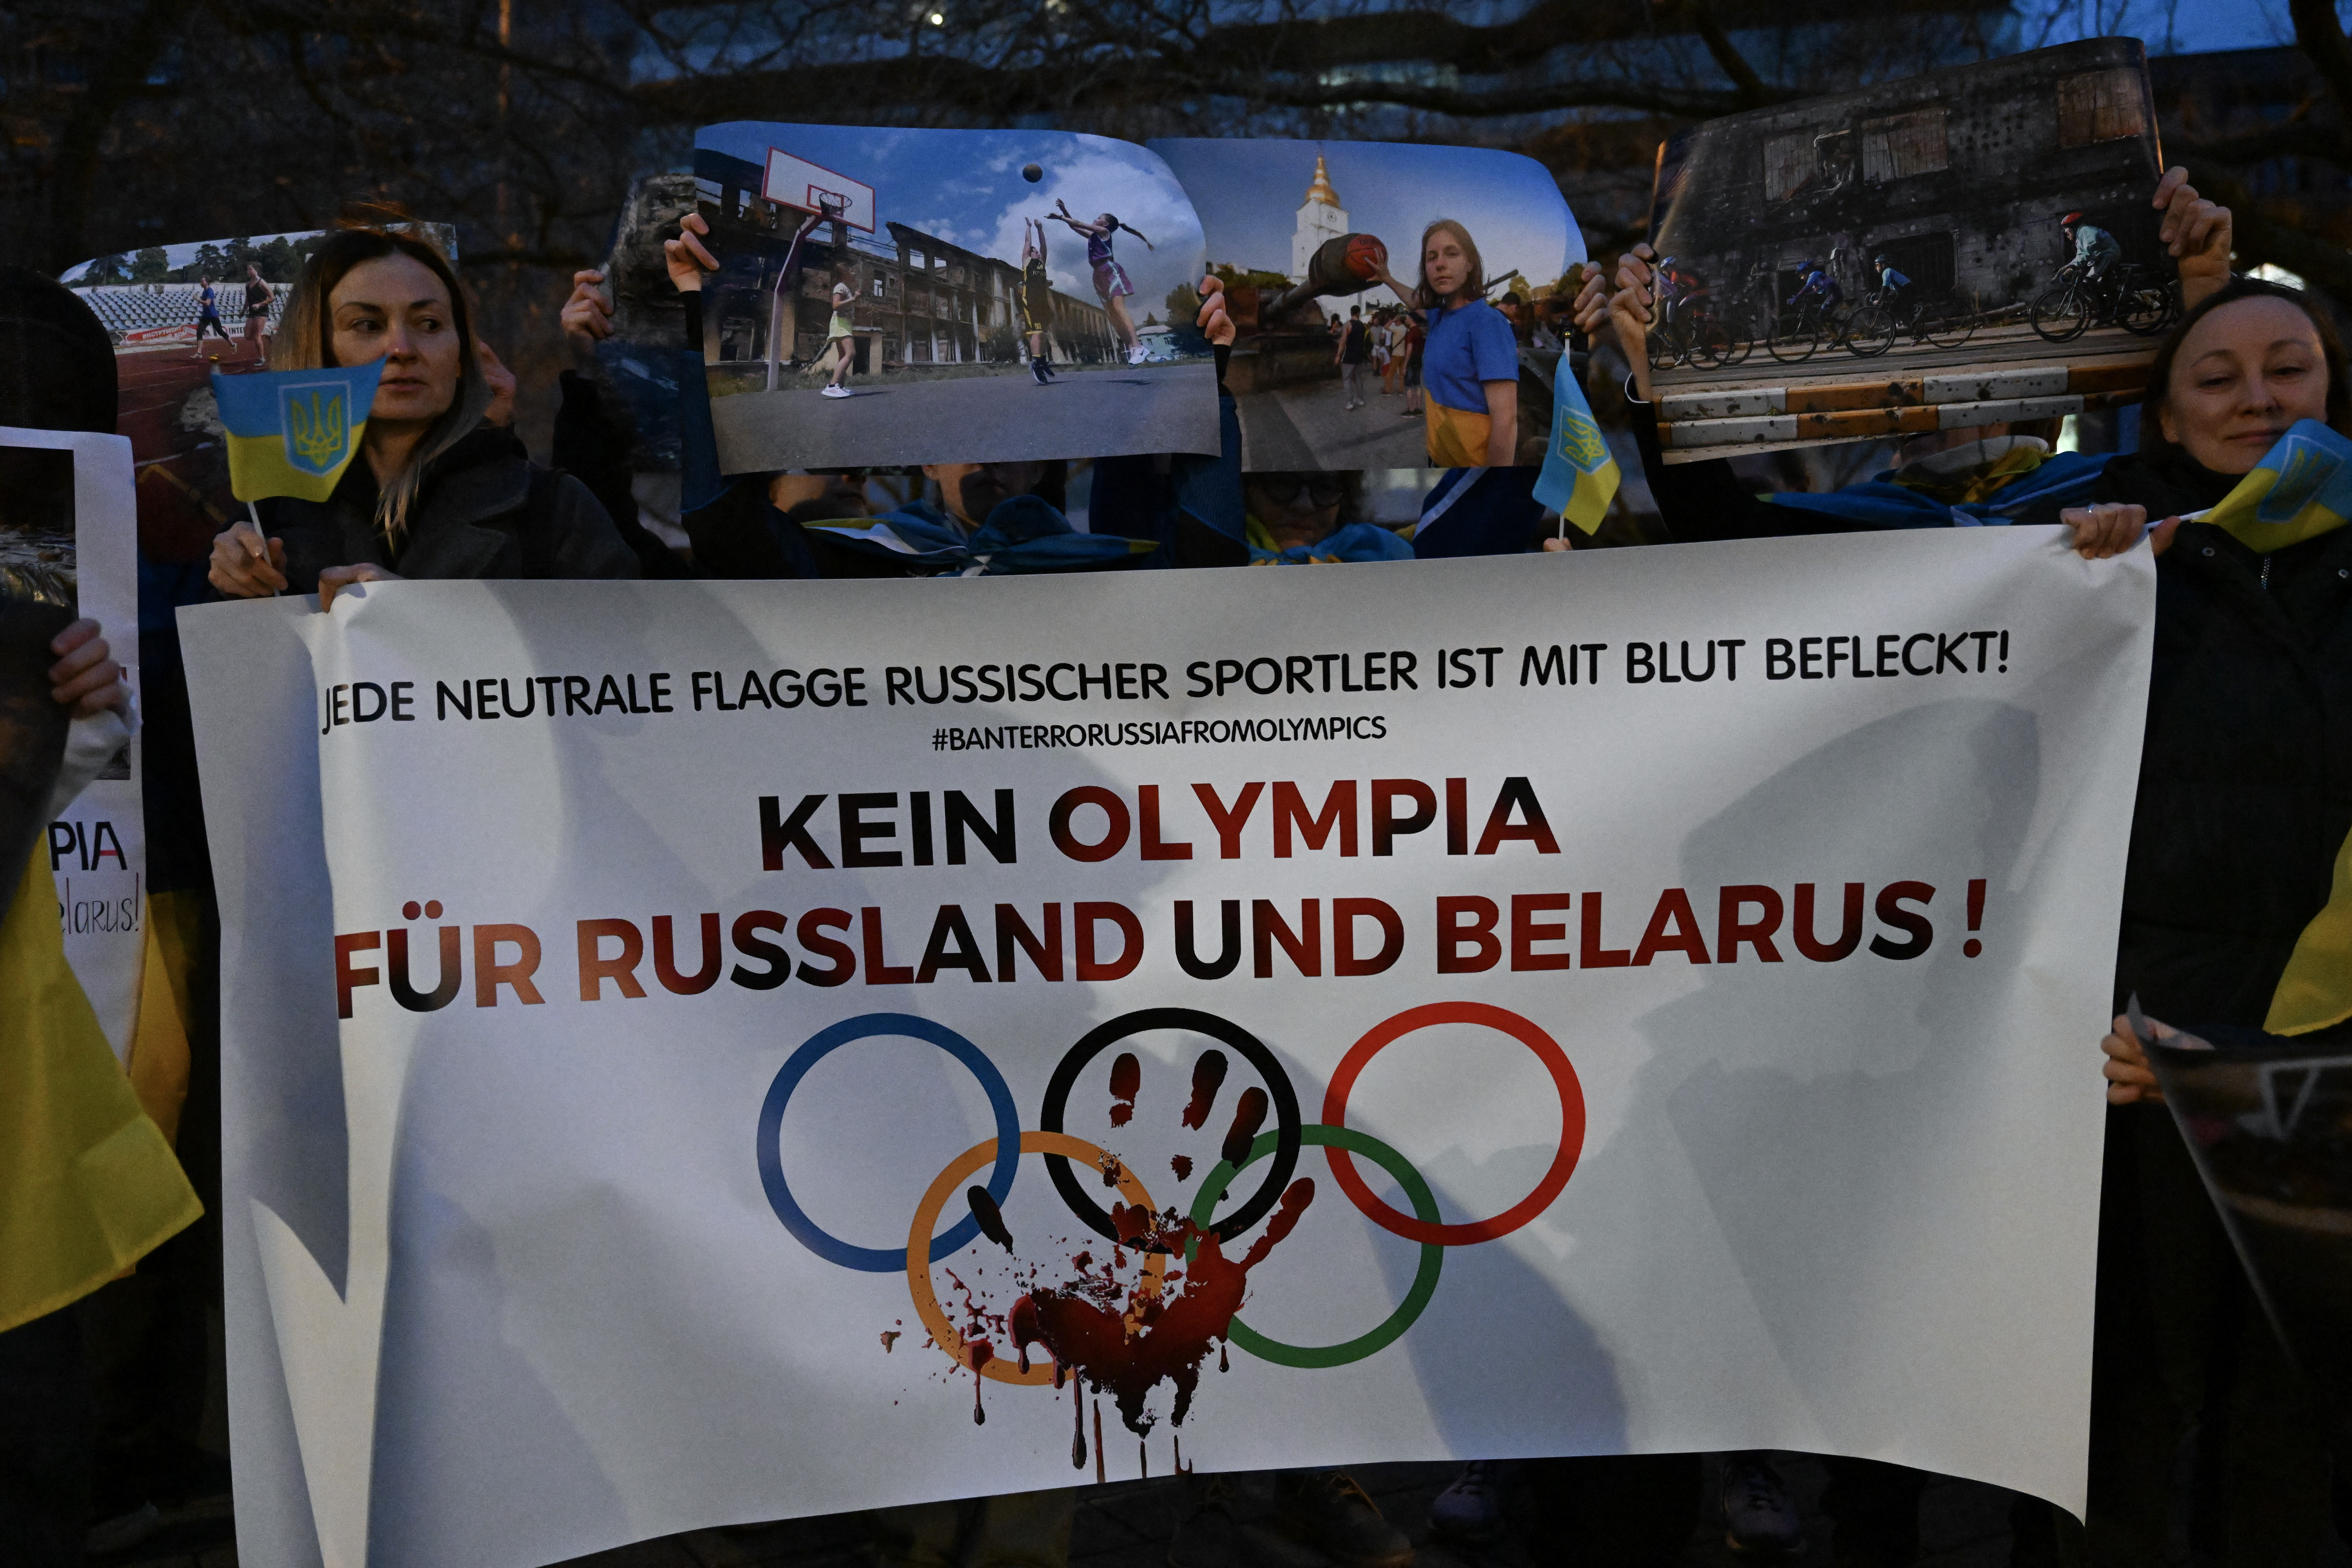 Refugiados ucranianos protestan contra la participación de atletas rusos y bielorrusos en los Juegos Olímpicos de París 2024 (Russian REUTERS/Jana Rodenbusch)